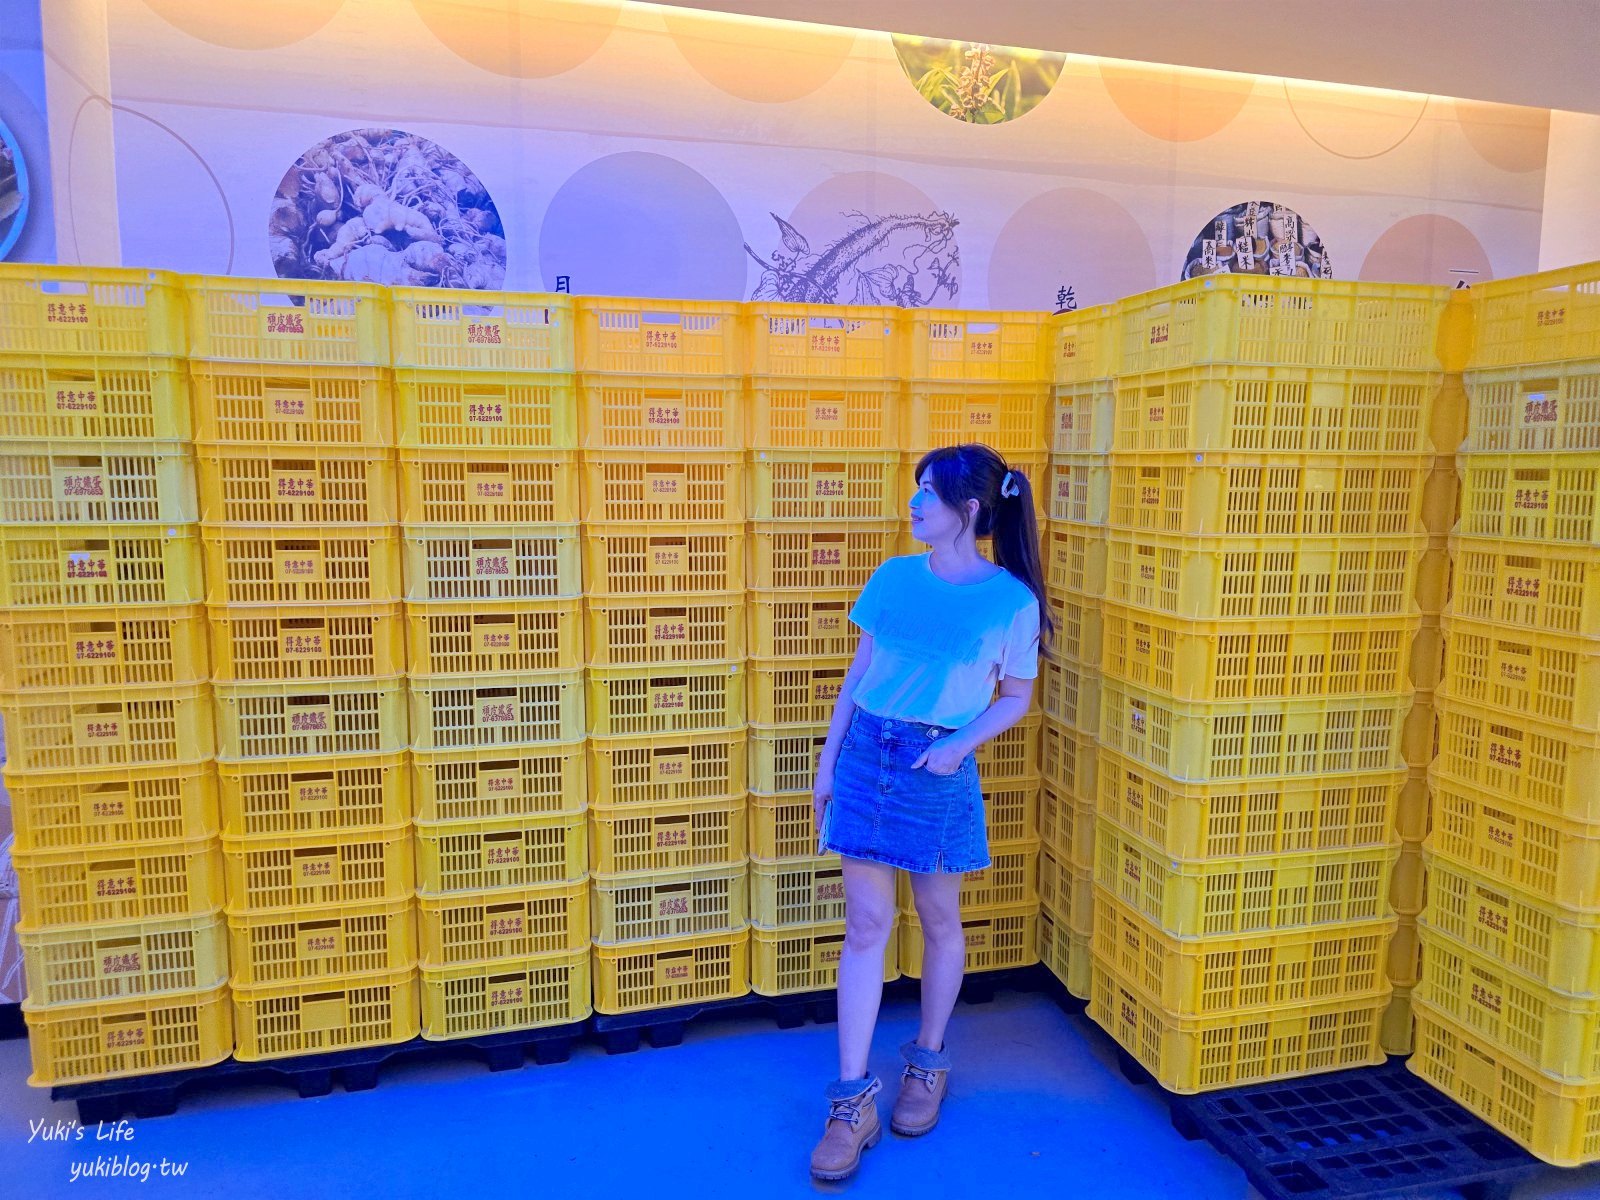 高雄景點|台灣滷味博物館|免門票親子好去處，懷舊場景好拍，好吃鐵蛋必買 - yukiblog.tw